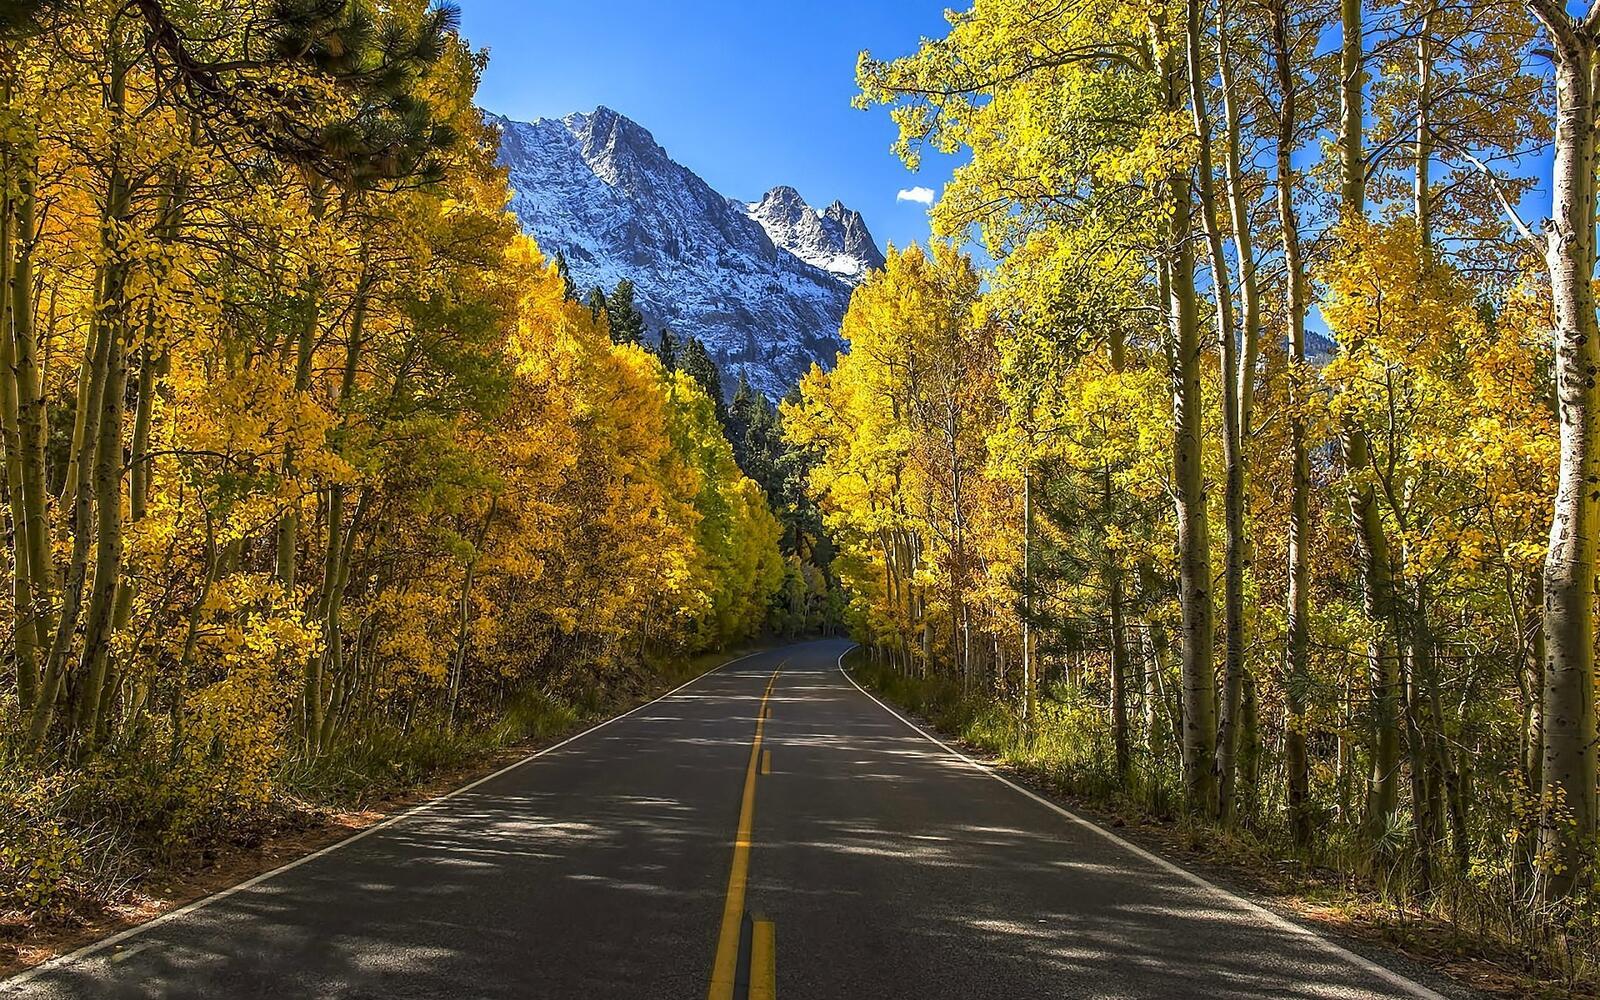 Бесплатное фото Асфальтированная дорога в лесу с желтой листвой на деревьях